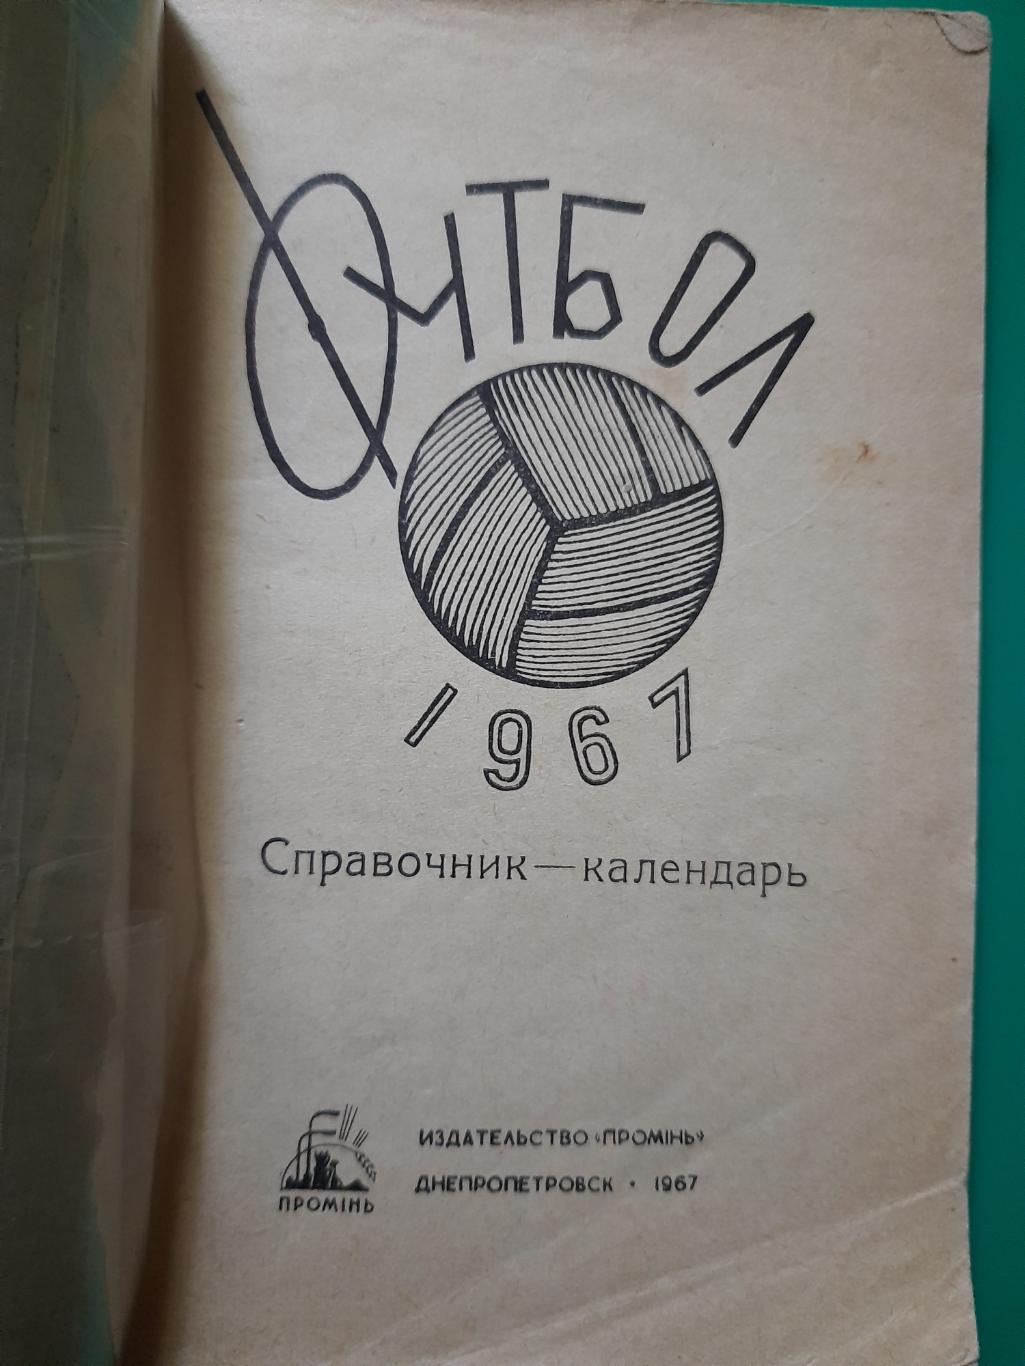 календарь-справочник,Футбол 1967, Днепропетровск. 1